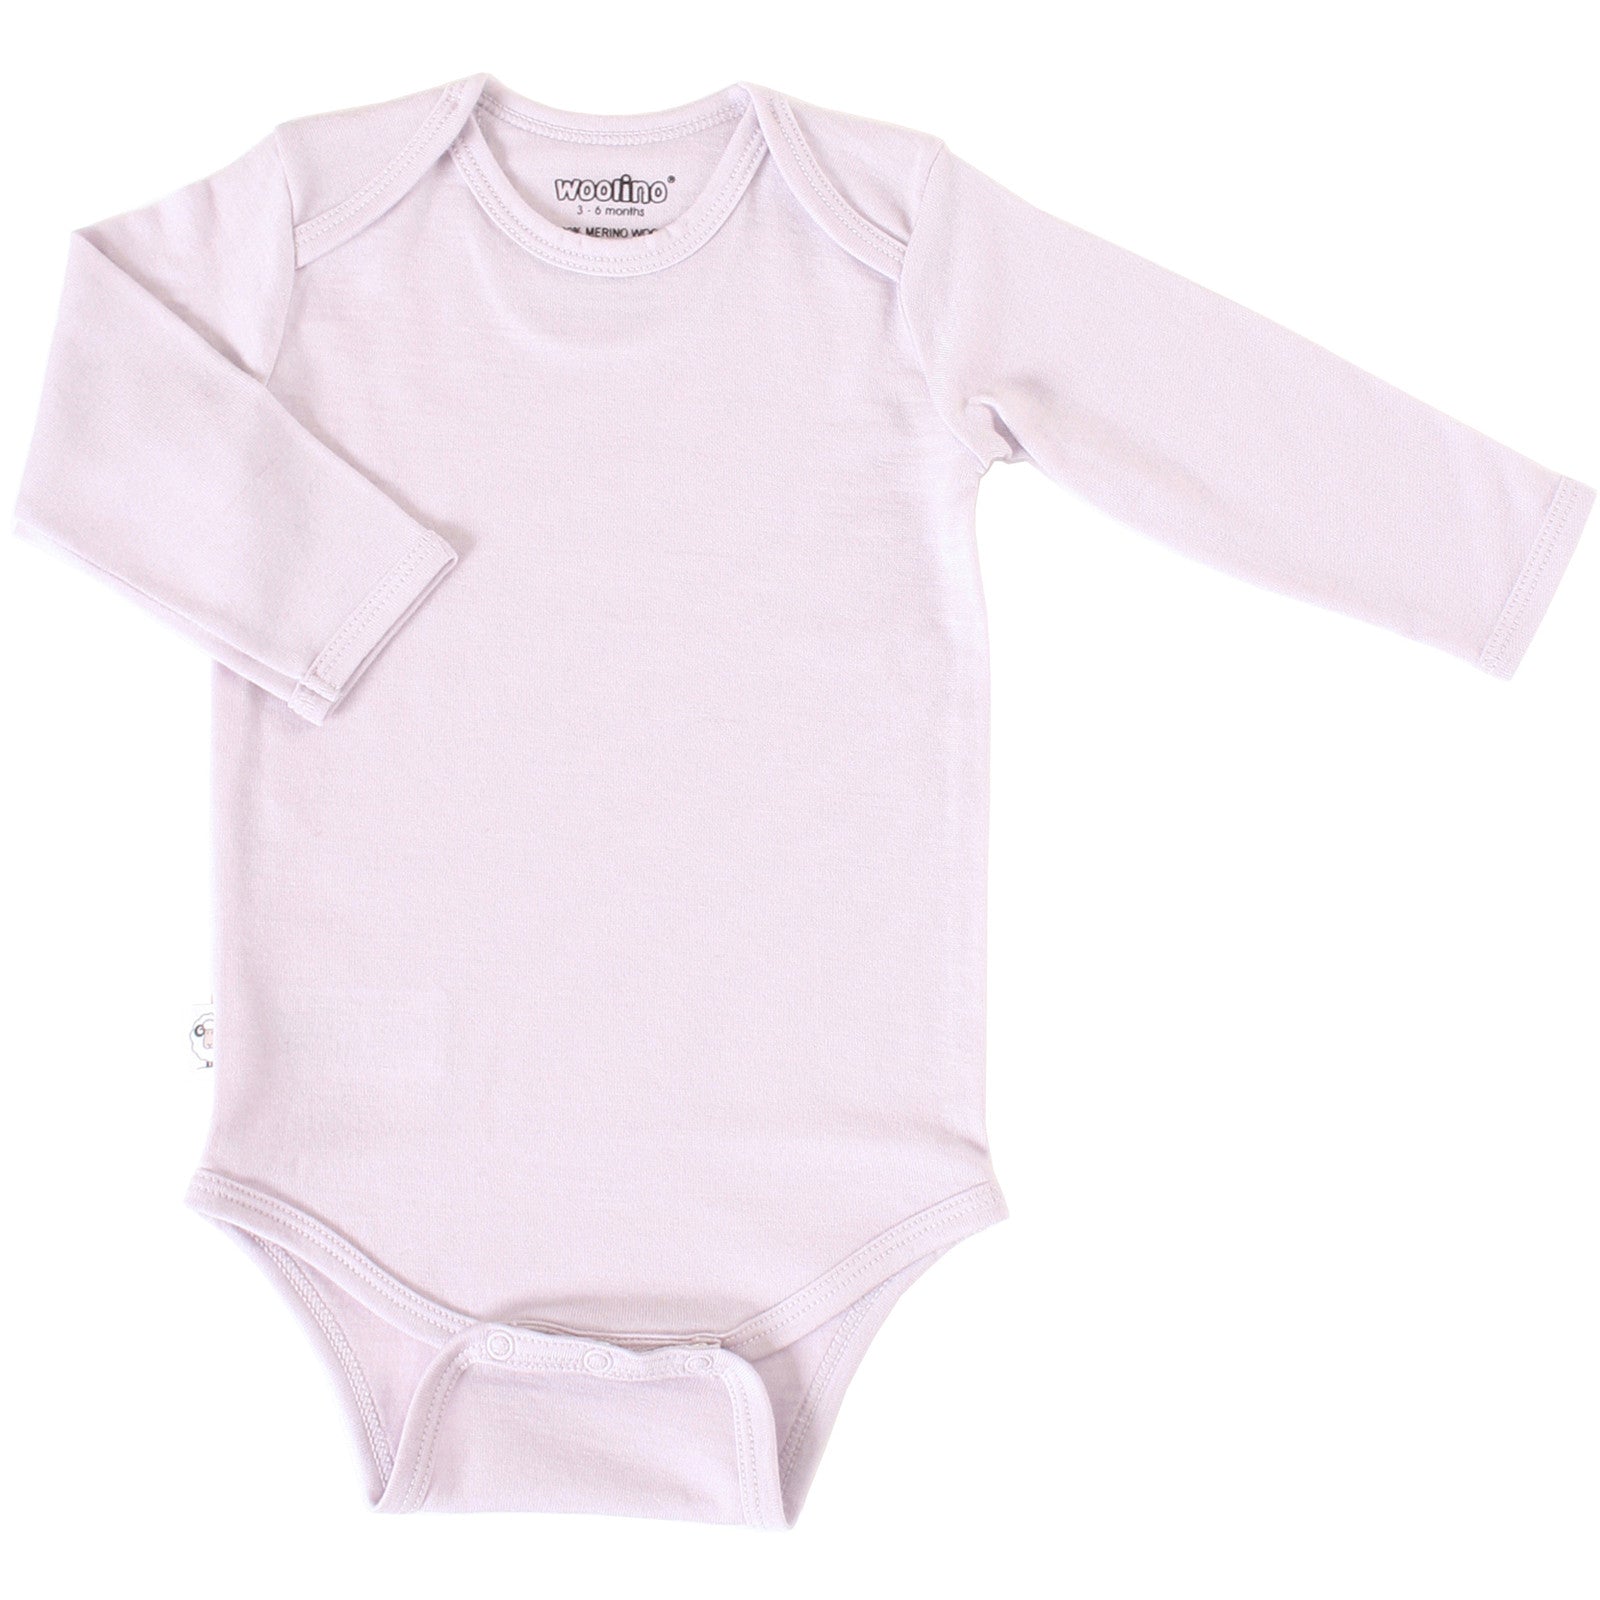 Merino Wool Baby Bodysuit | Natural Merino Wool Baby Clothing – Woolino